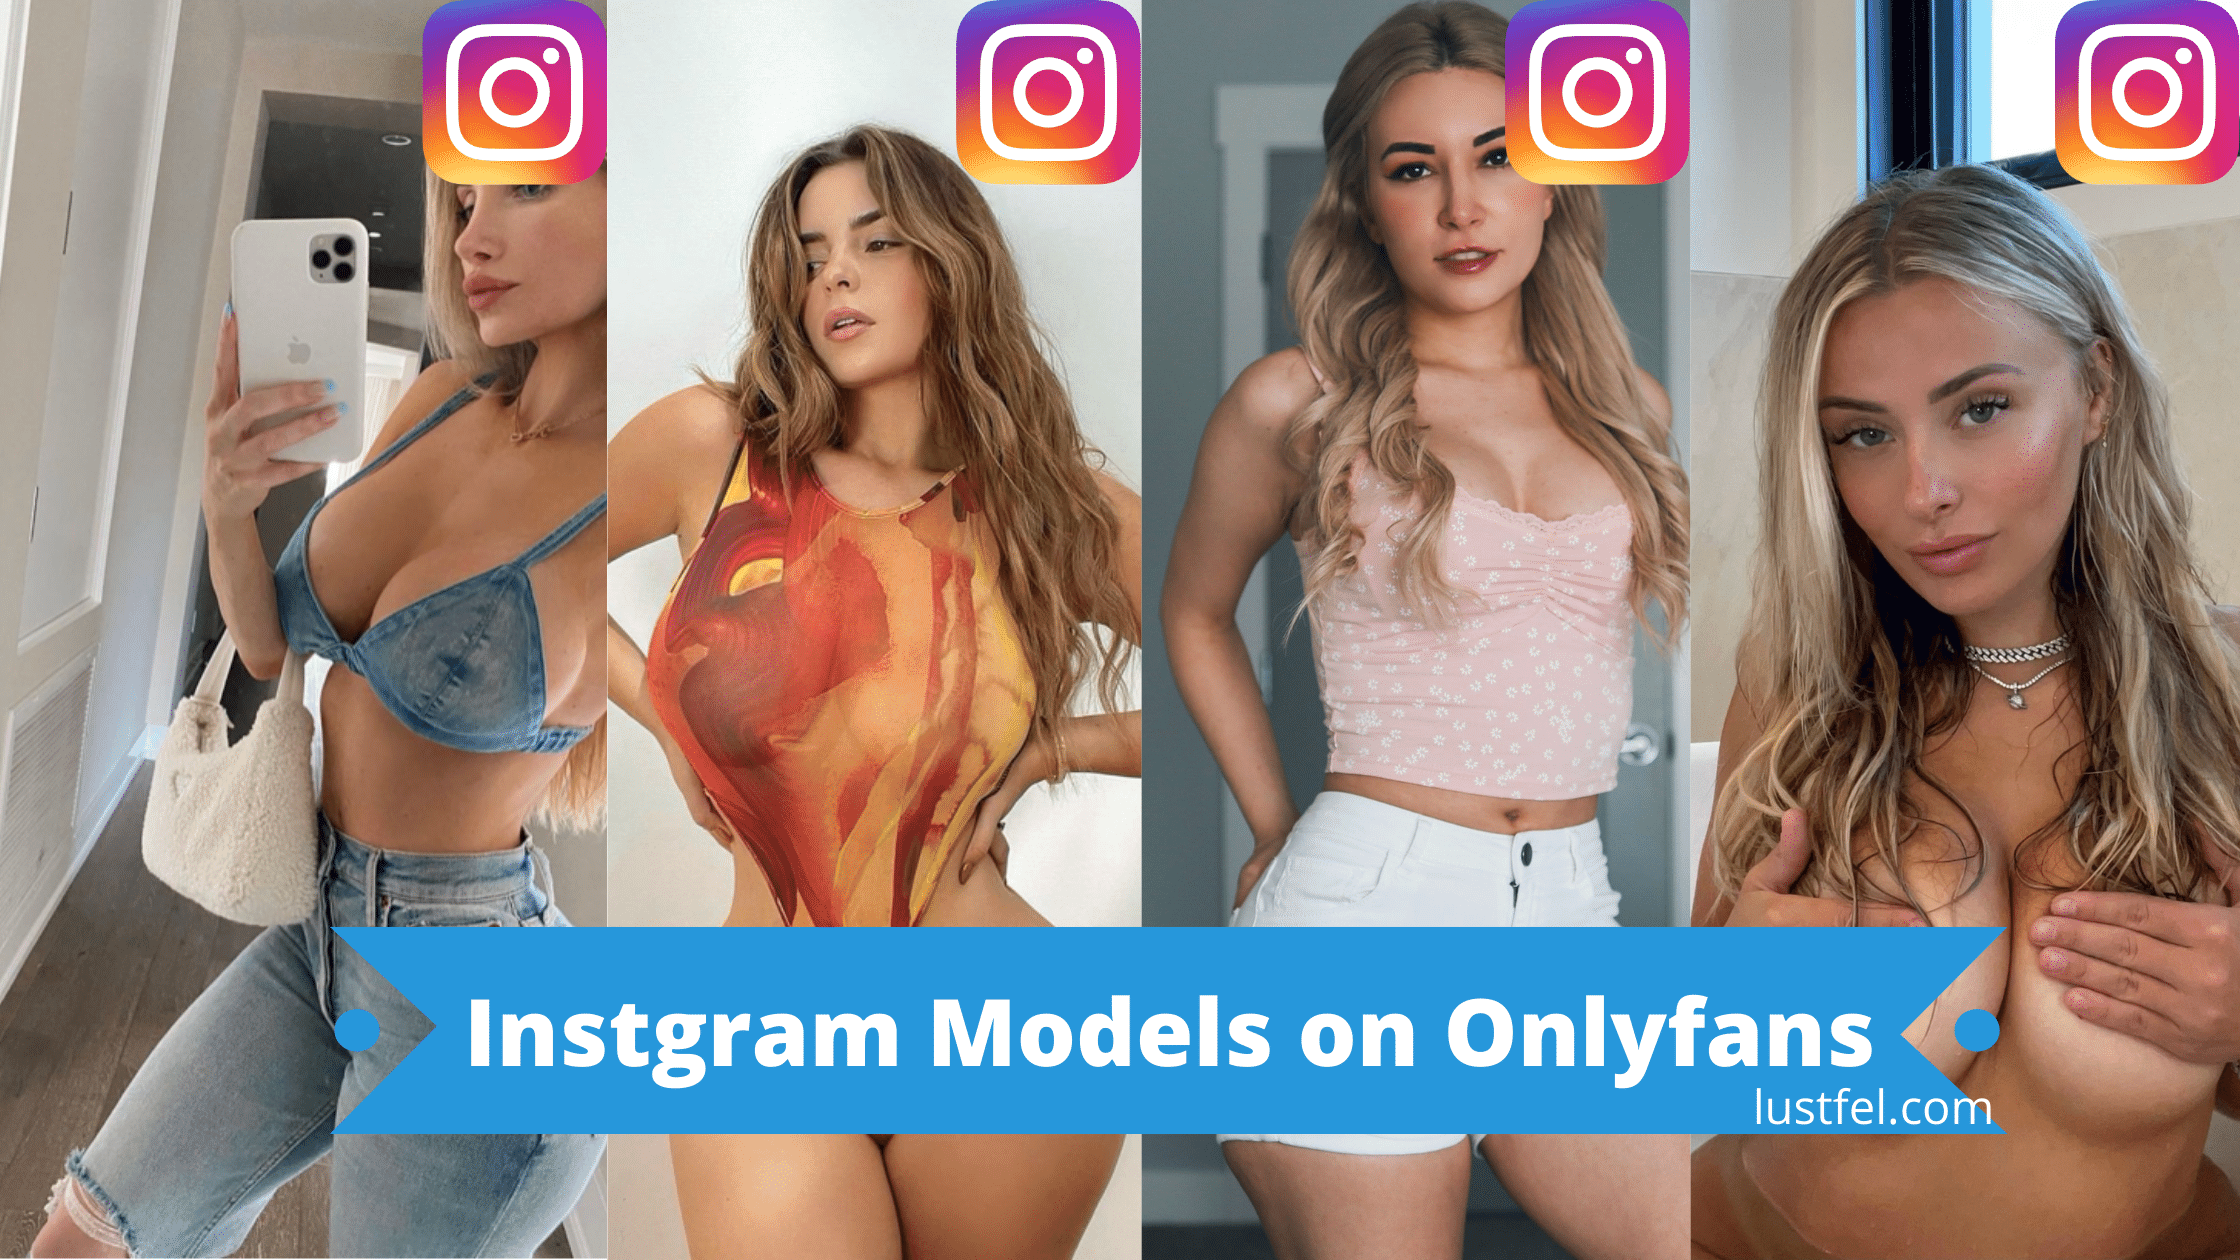 Instagram hot models nude Top 20+: